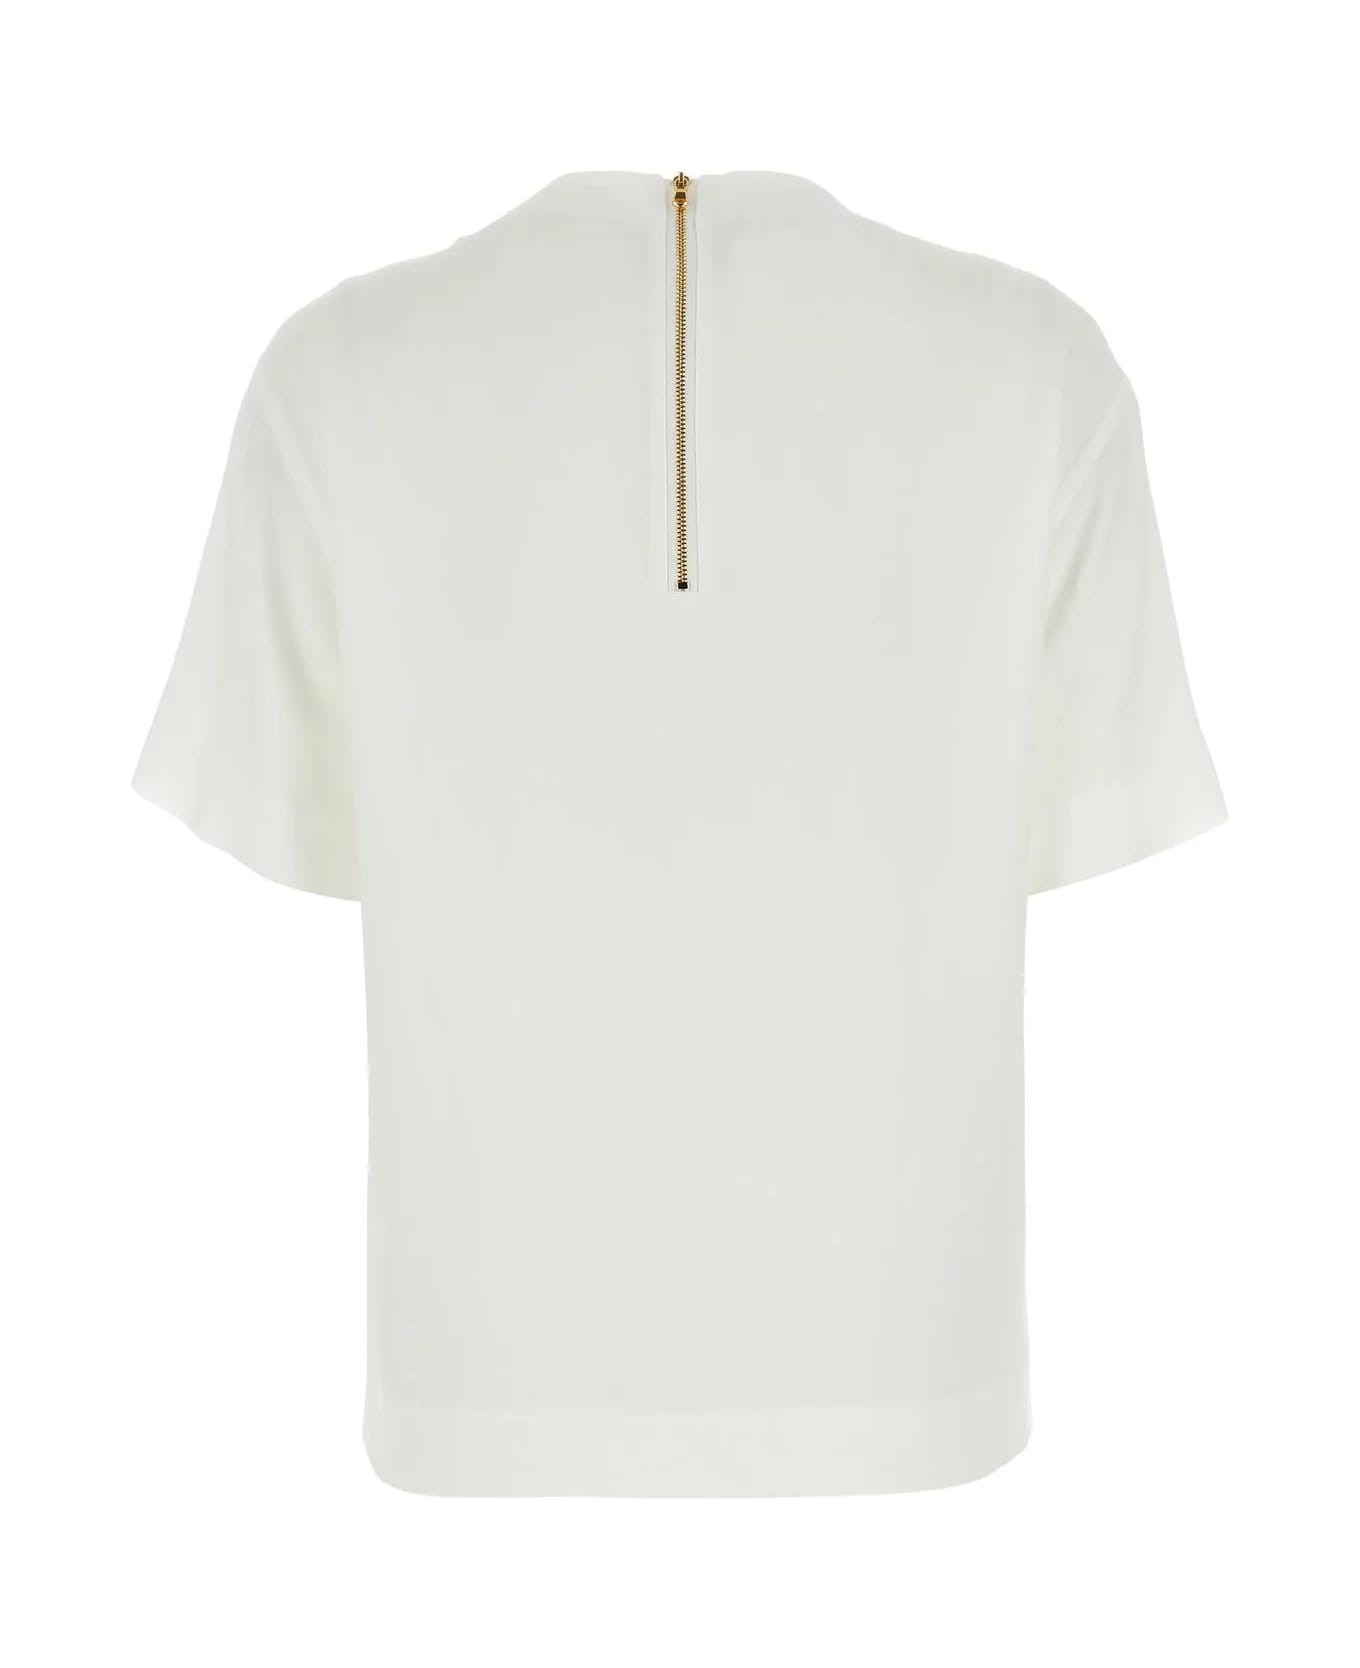 Moschino White Crepe T-shirt - WHITE Tシャツ